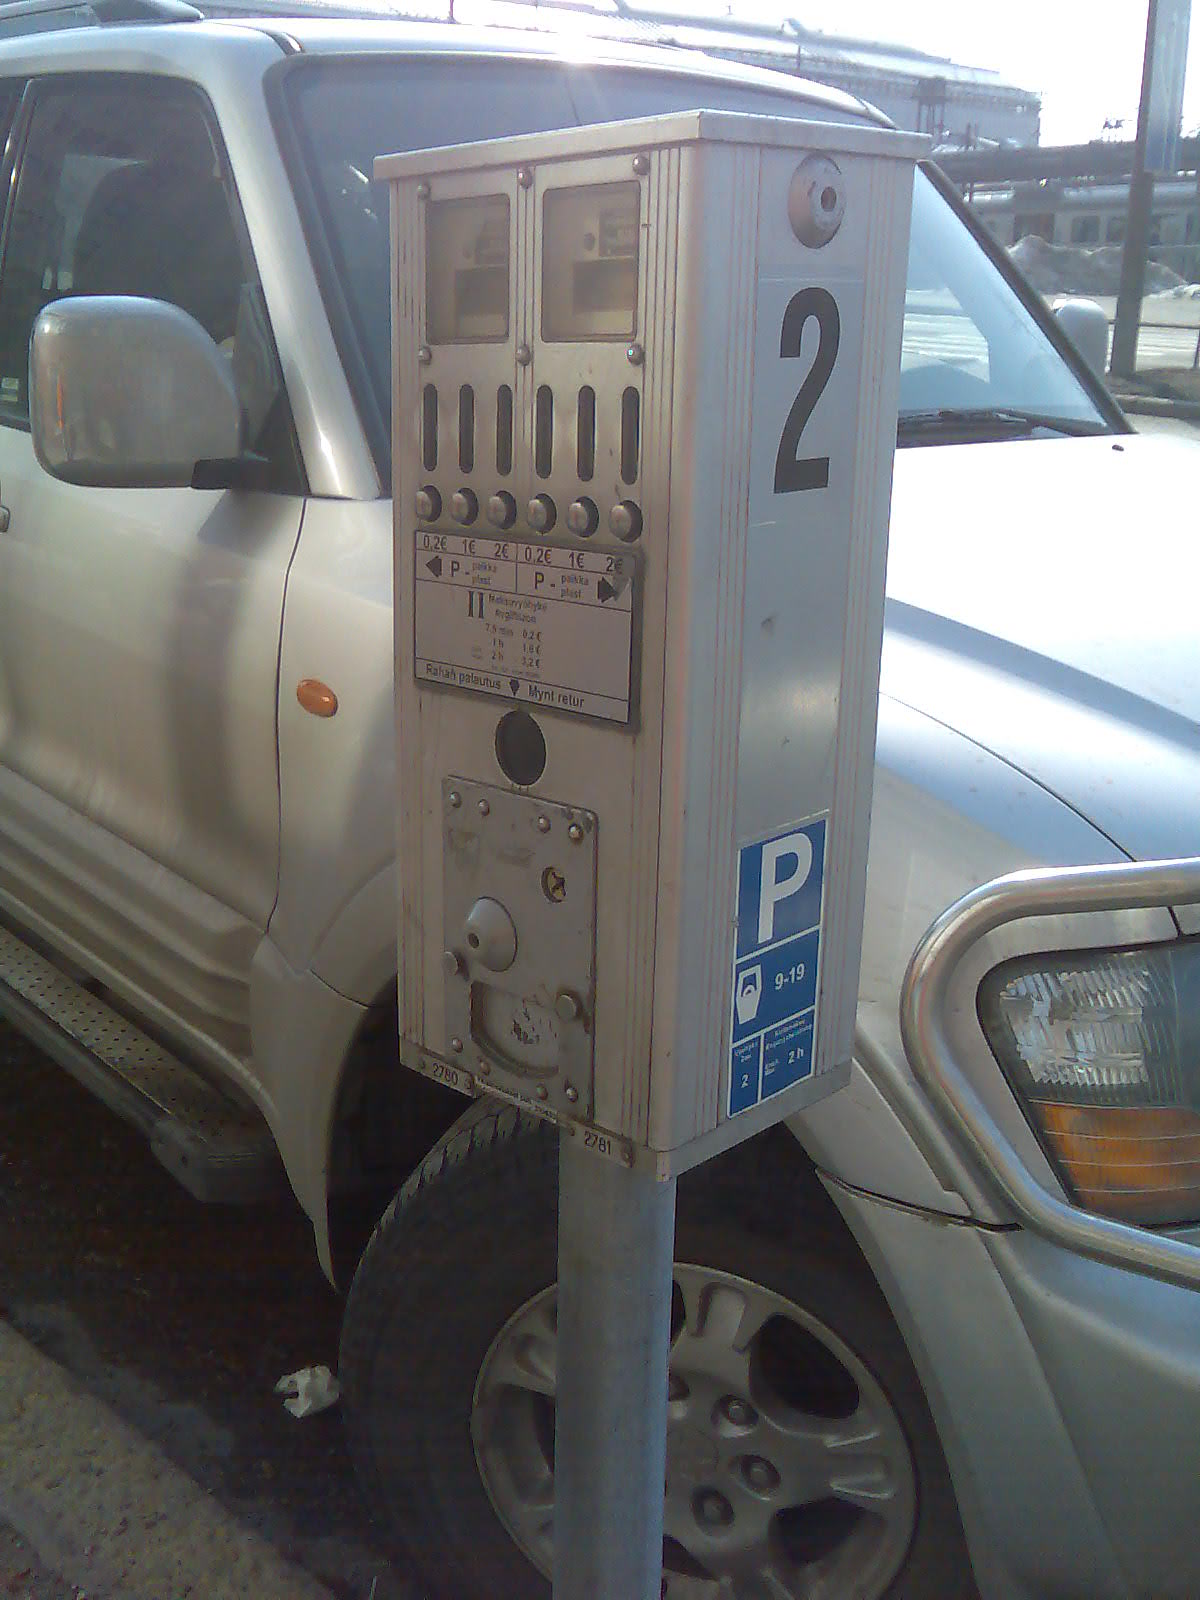 [parkingmeter.jpg]